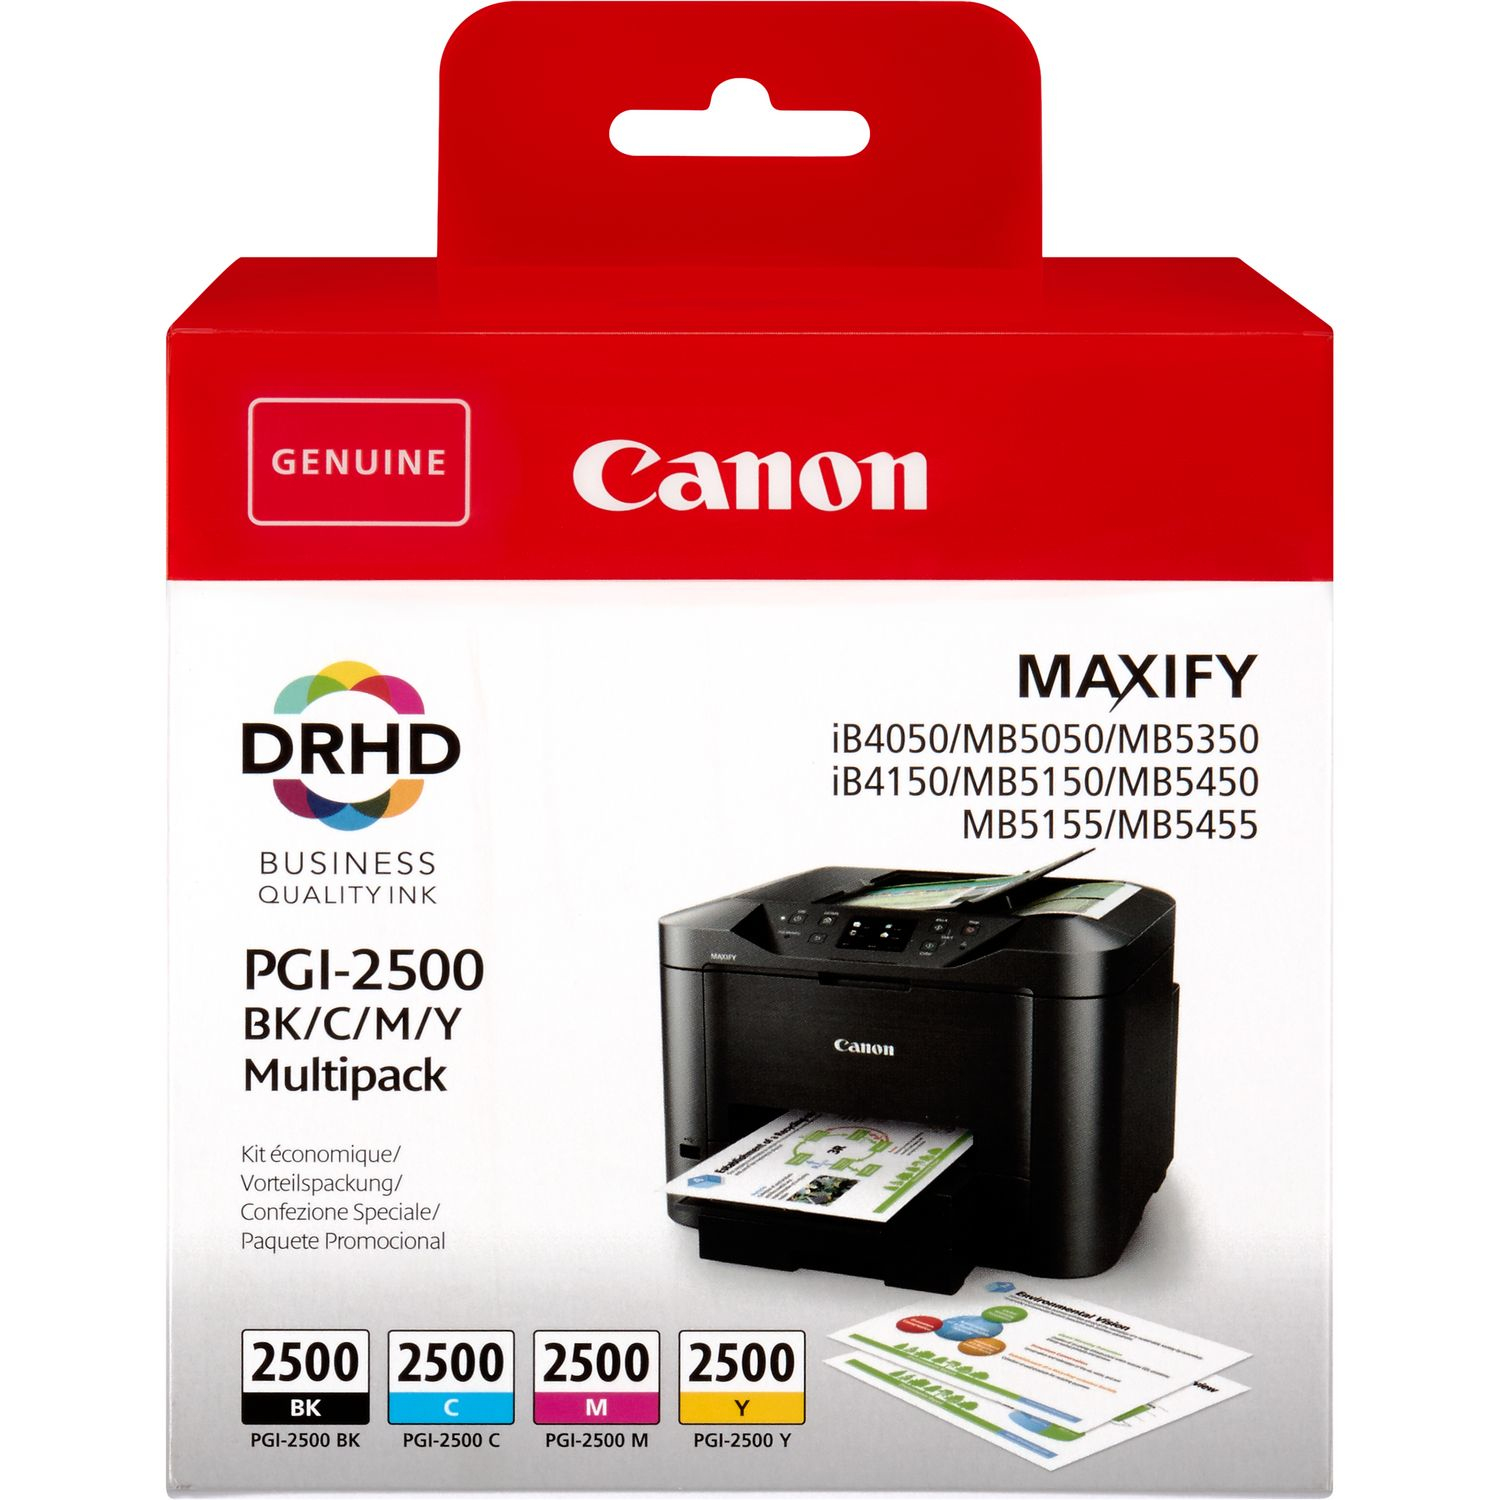 Canon ink pgi-2500 bk/c/m/y multi